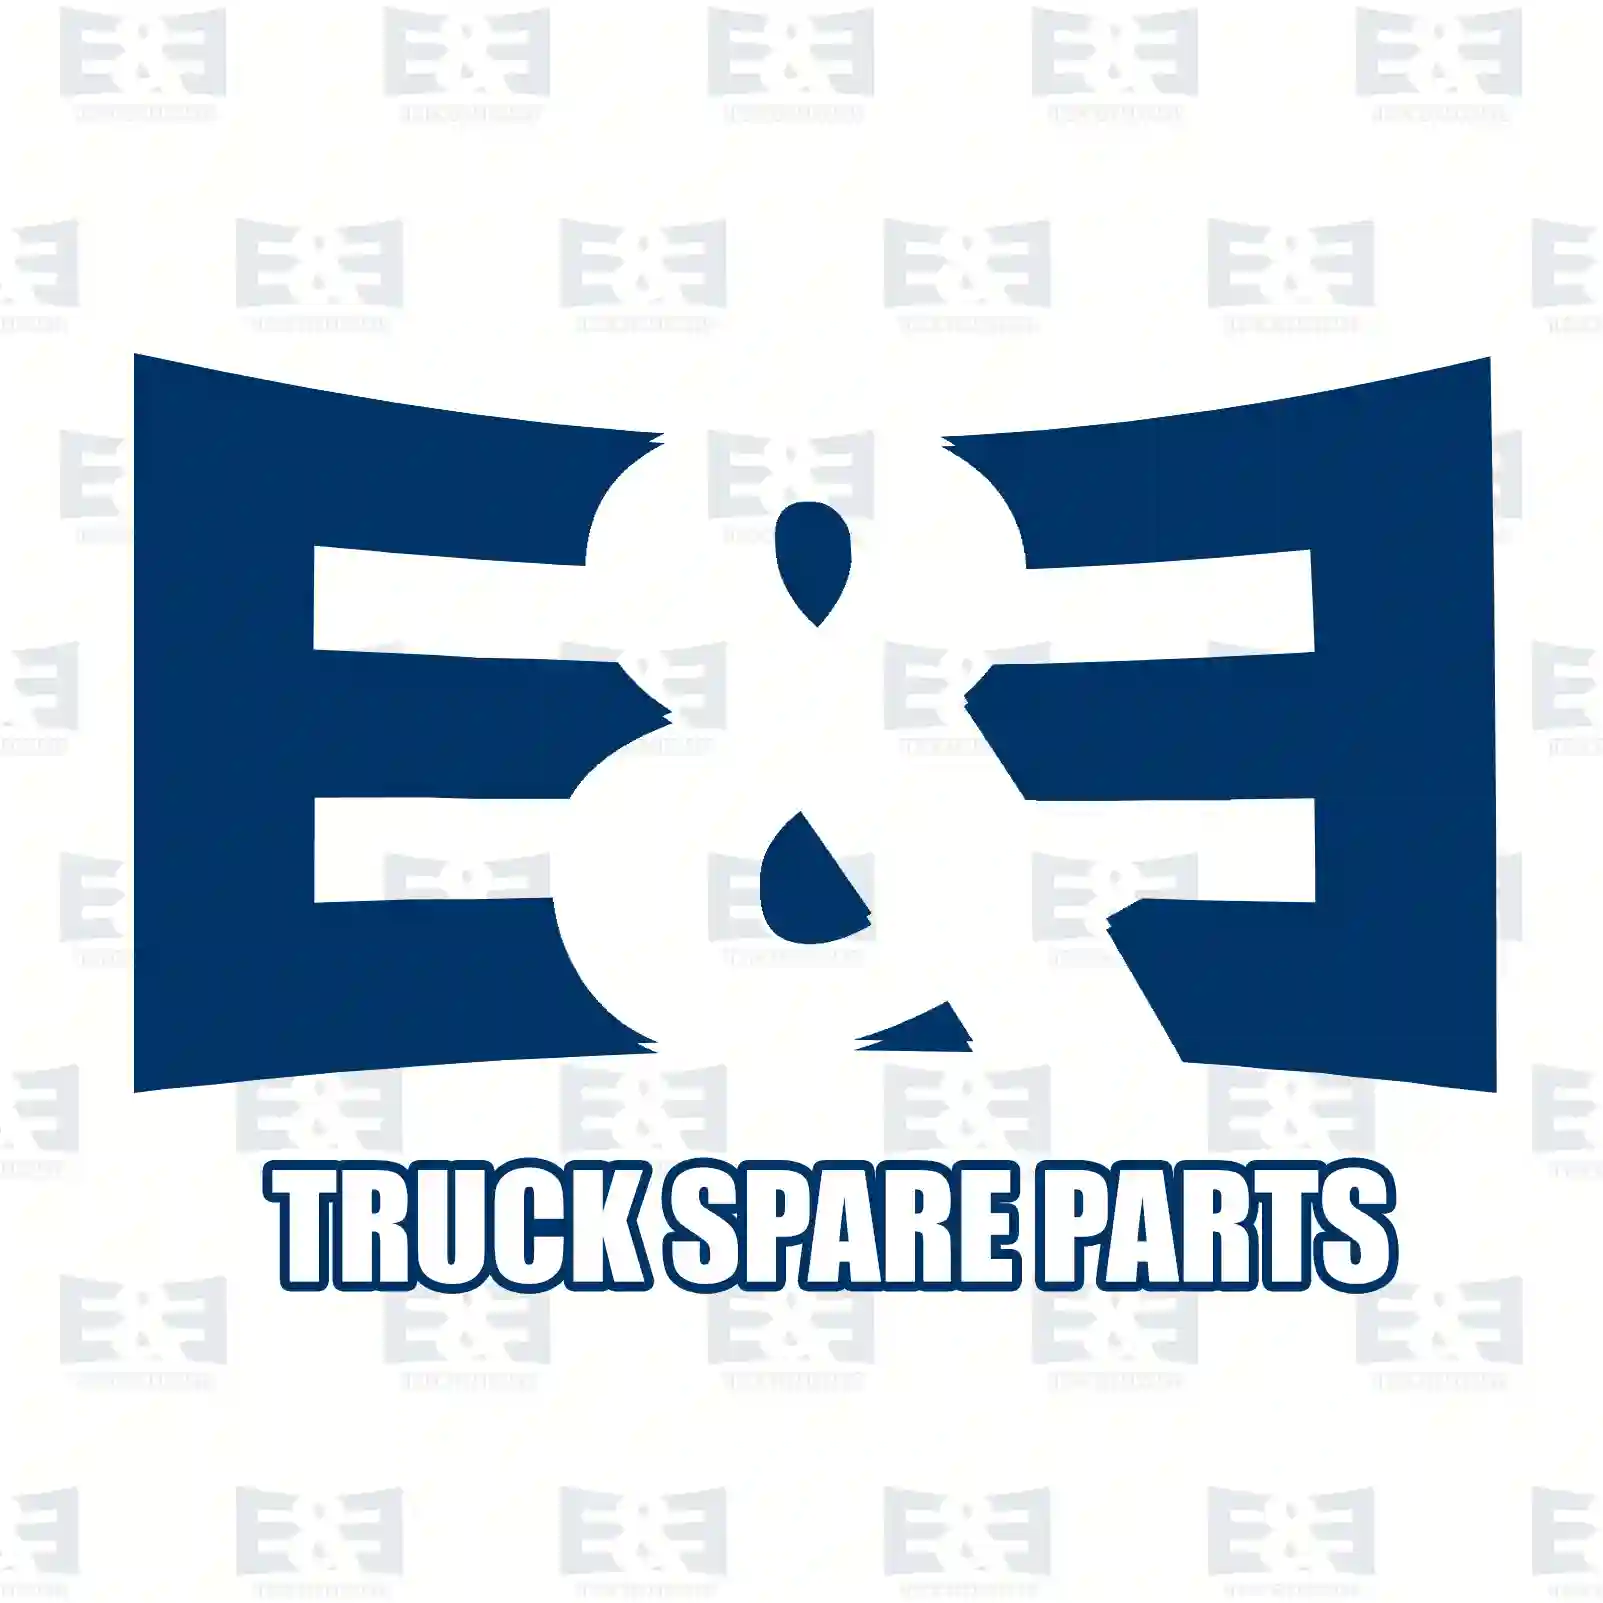 Unit injector, 2E2286001, 5001866295, 7420430583, 20430583, 8113941 ||  2E2286001 E&E Truck Spare Parts | Truck Spare Parts, Auotomotive Spare Parts Unit injector, 2E2286001, 5001866295, 7420430583, 20430583, 8113941 ||  2E2286001 E&E Truck Spare Parts | Truck Spare Parts, Auotomotive Spare Parts